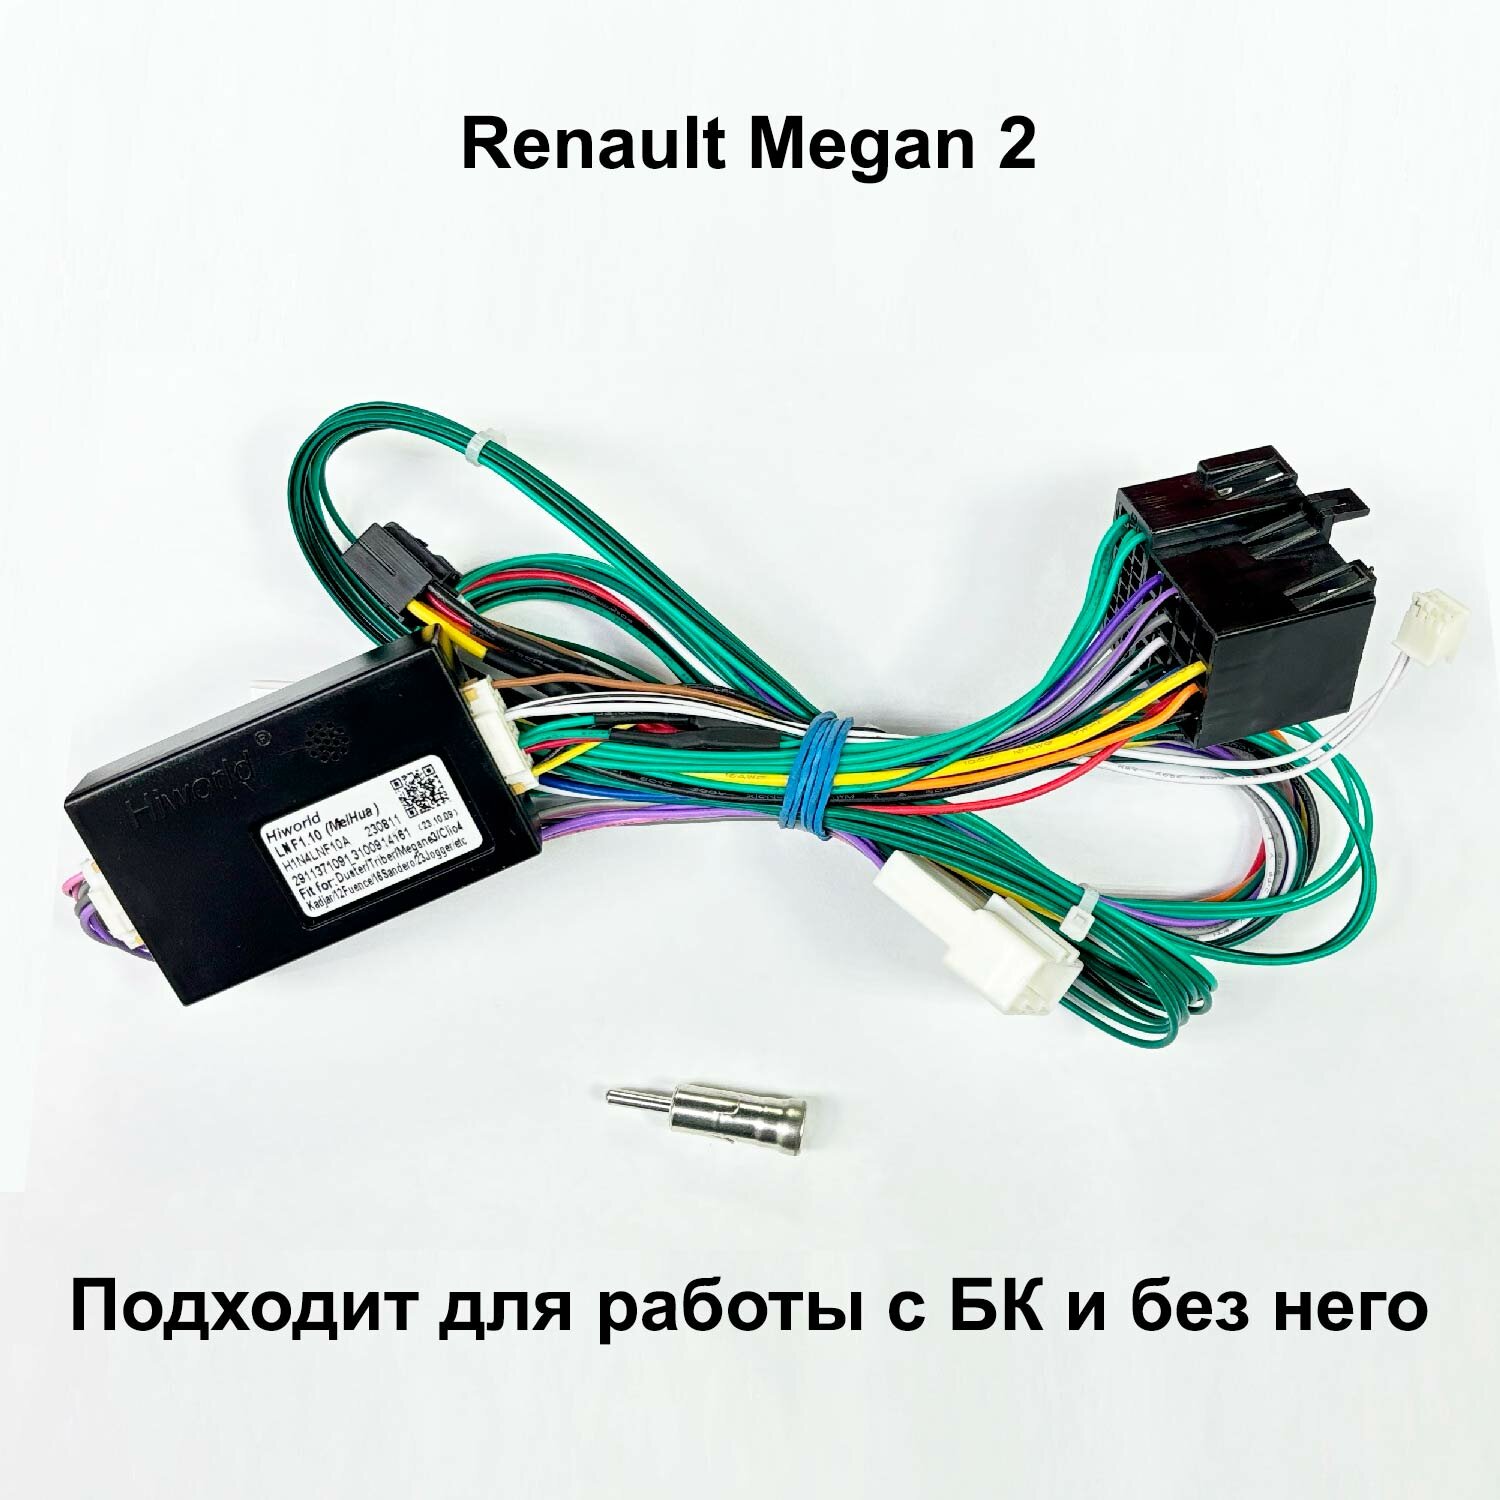 Кабель для планшетной магнитолы Renault Megan 2 CANBUS